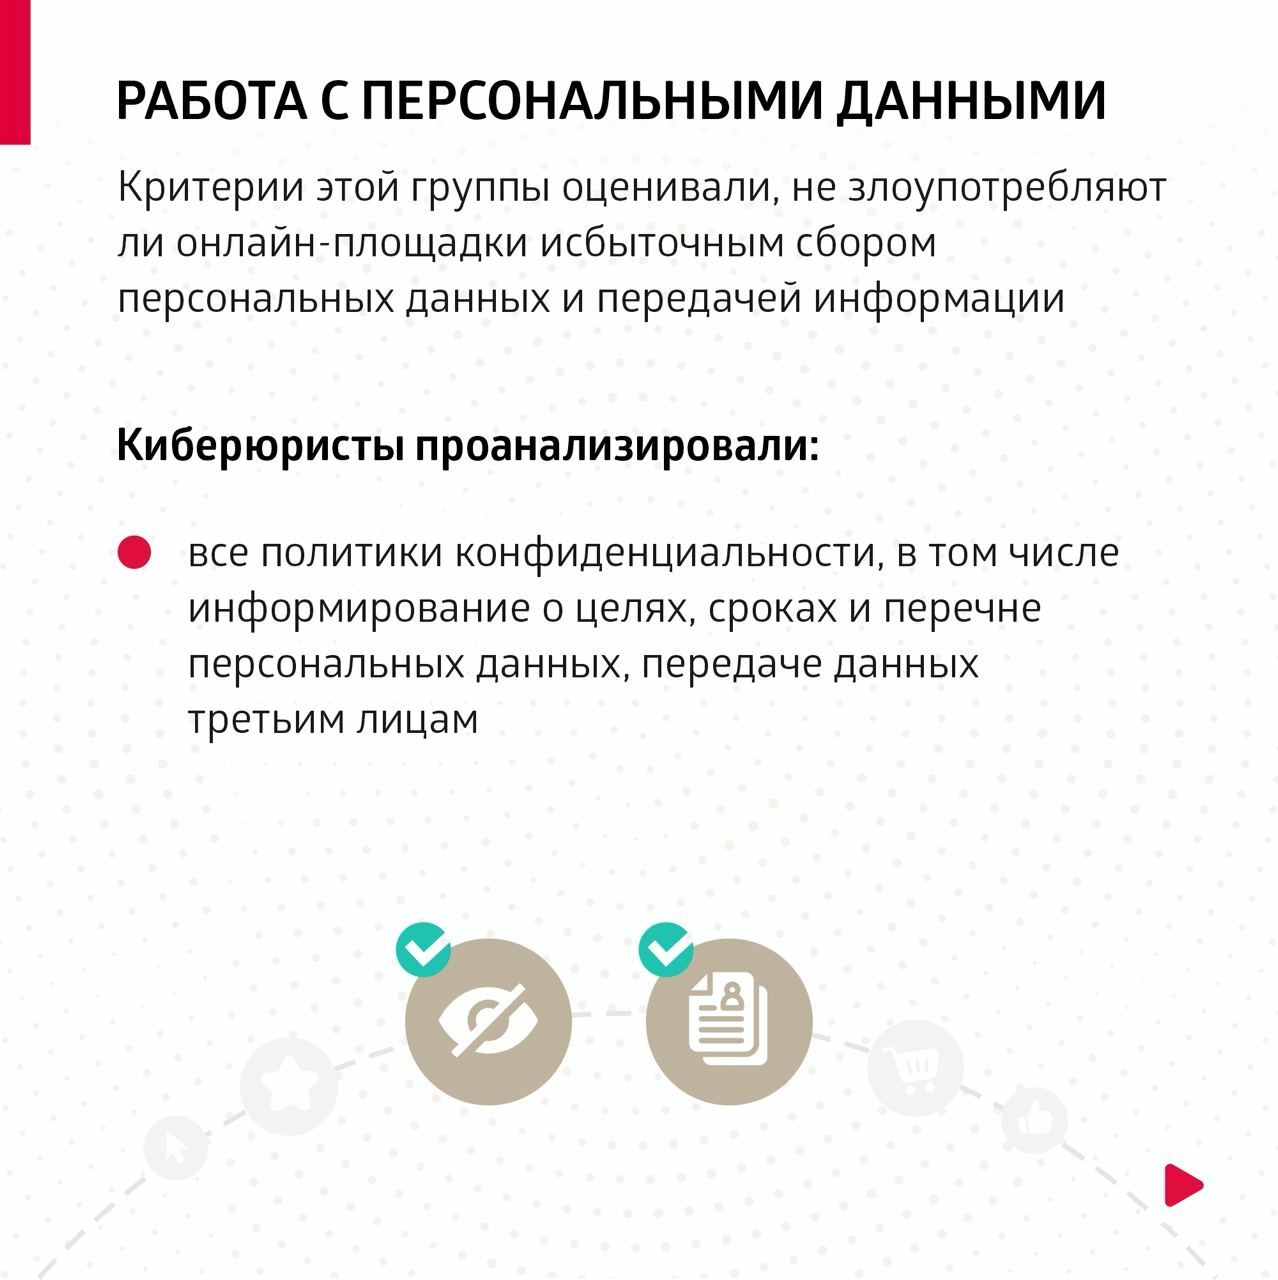 Жители Башкортостана, планируя покупки, теперь могут выбрать клиентоориентированные площадки